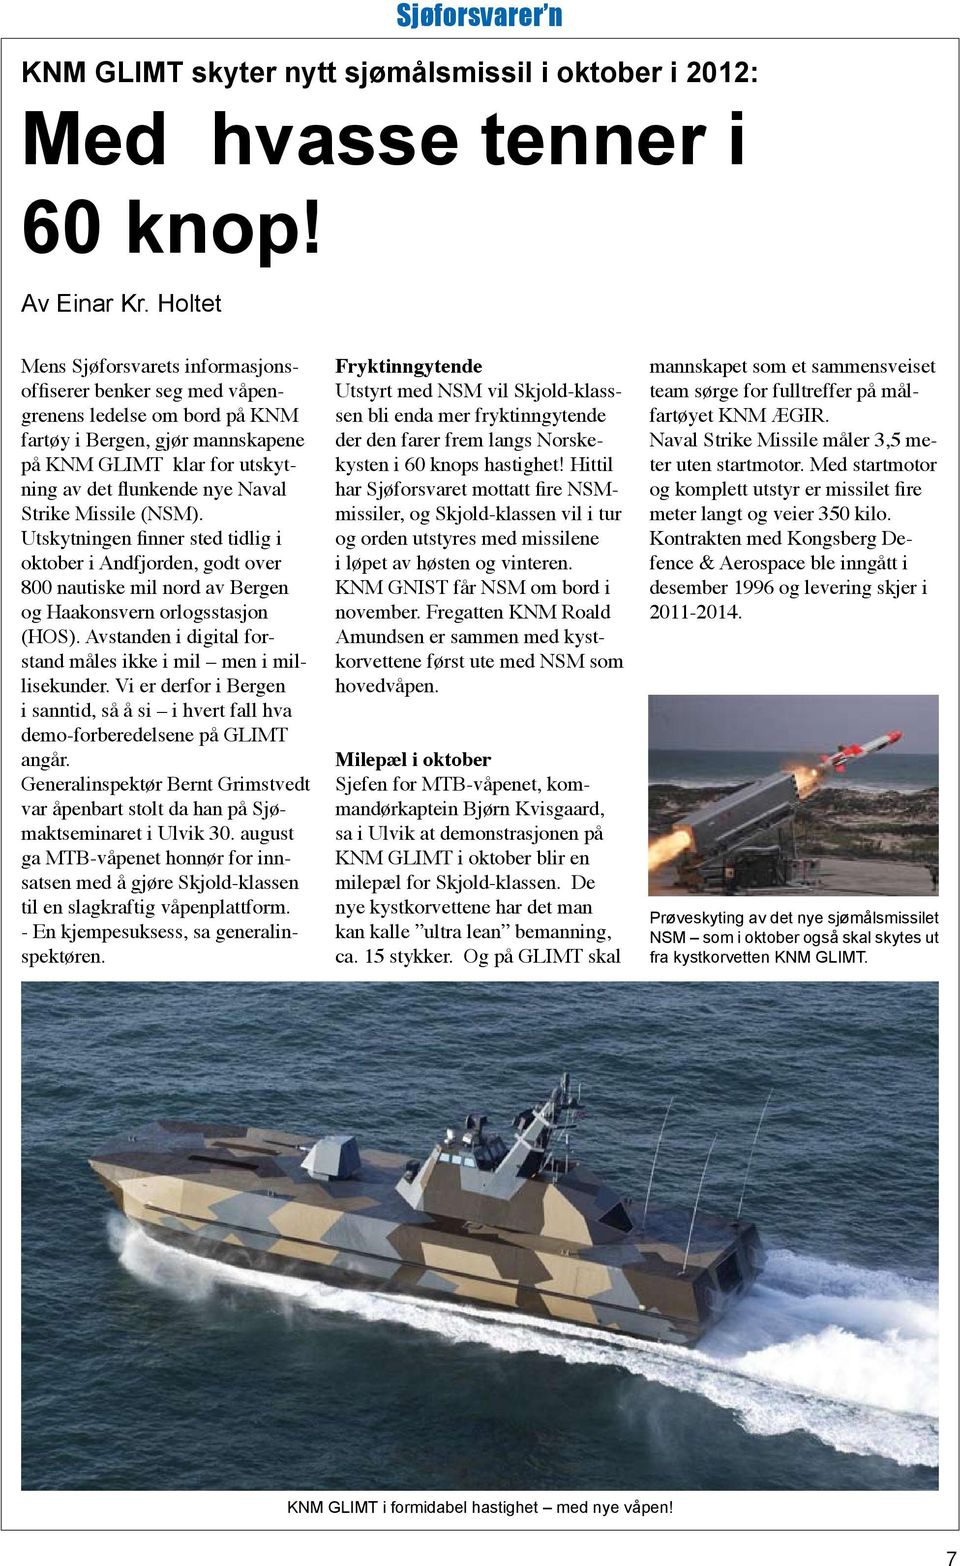 Missile (NSM). Utskytningen finner sted tidlig i oktober i Andfjorden, godt over 800 nautiske mil nord av Bergen og Haakonsvern orlogsstasjon (HOS).